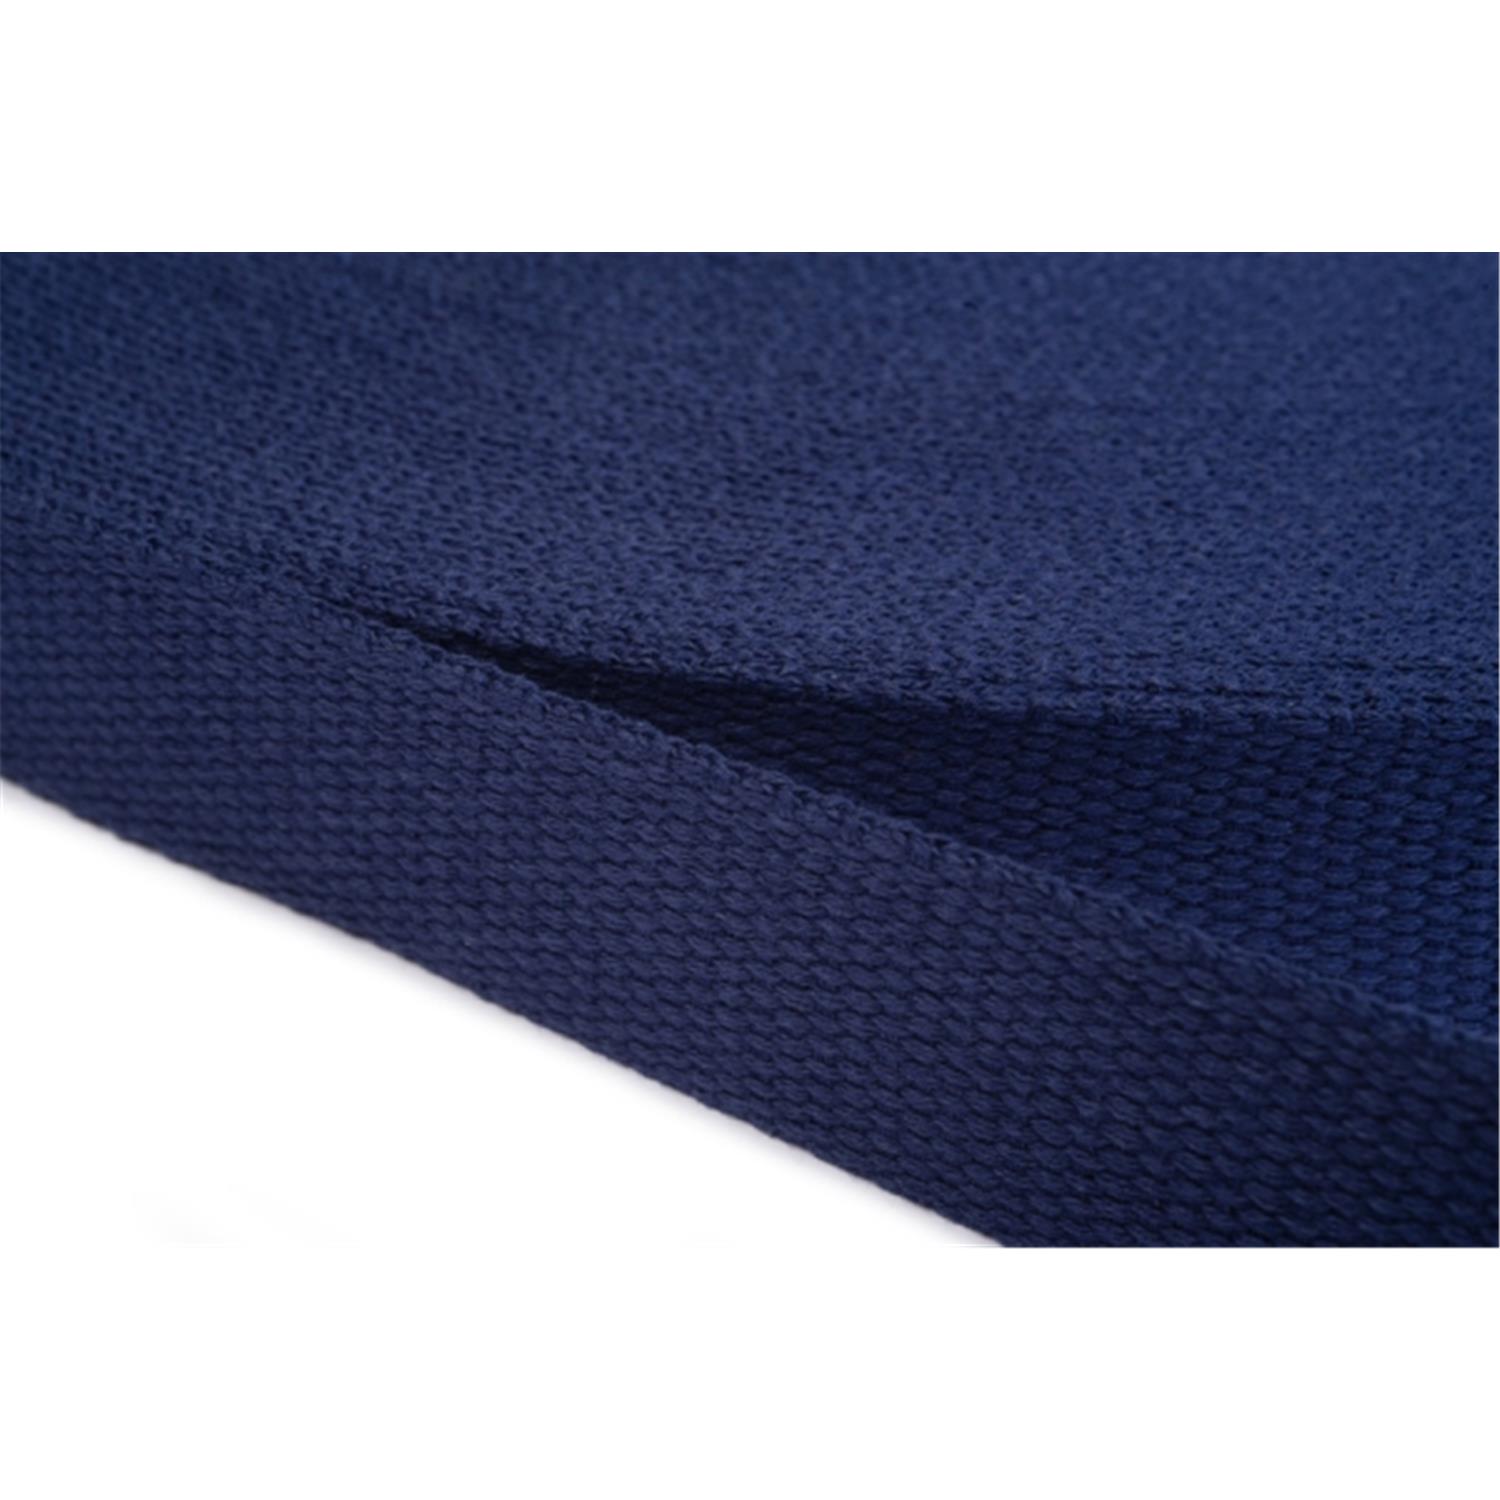 Gurtband aus Baumwolle 10mm in 20 Farben 13 - dunkelblau 12 Meter